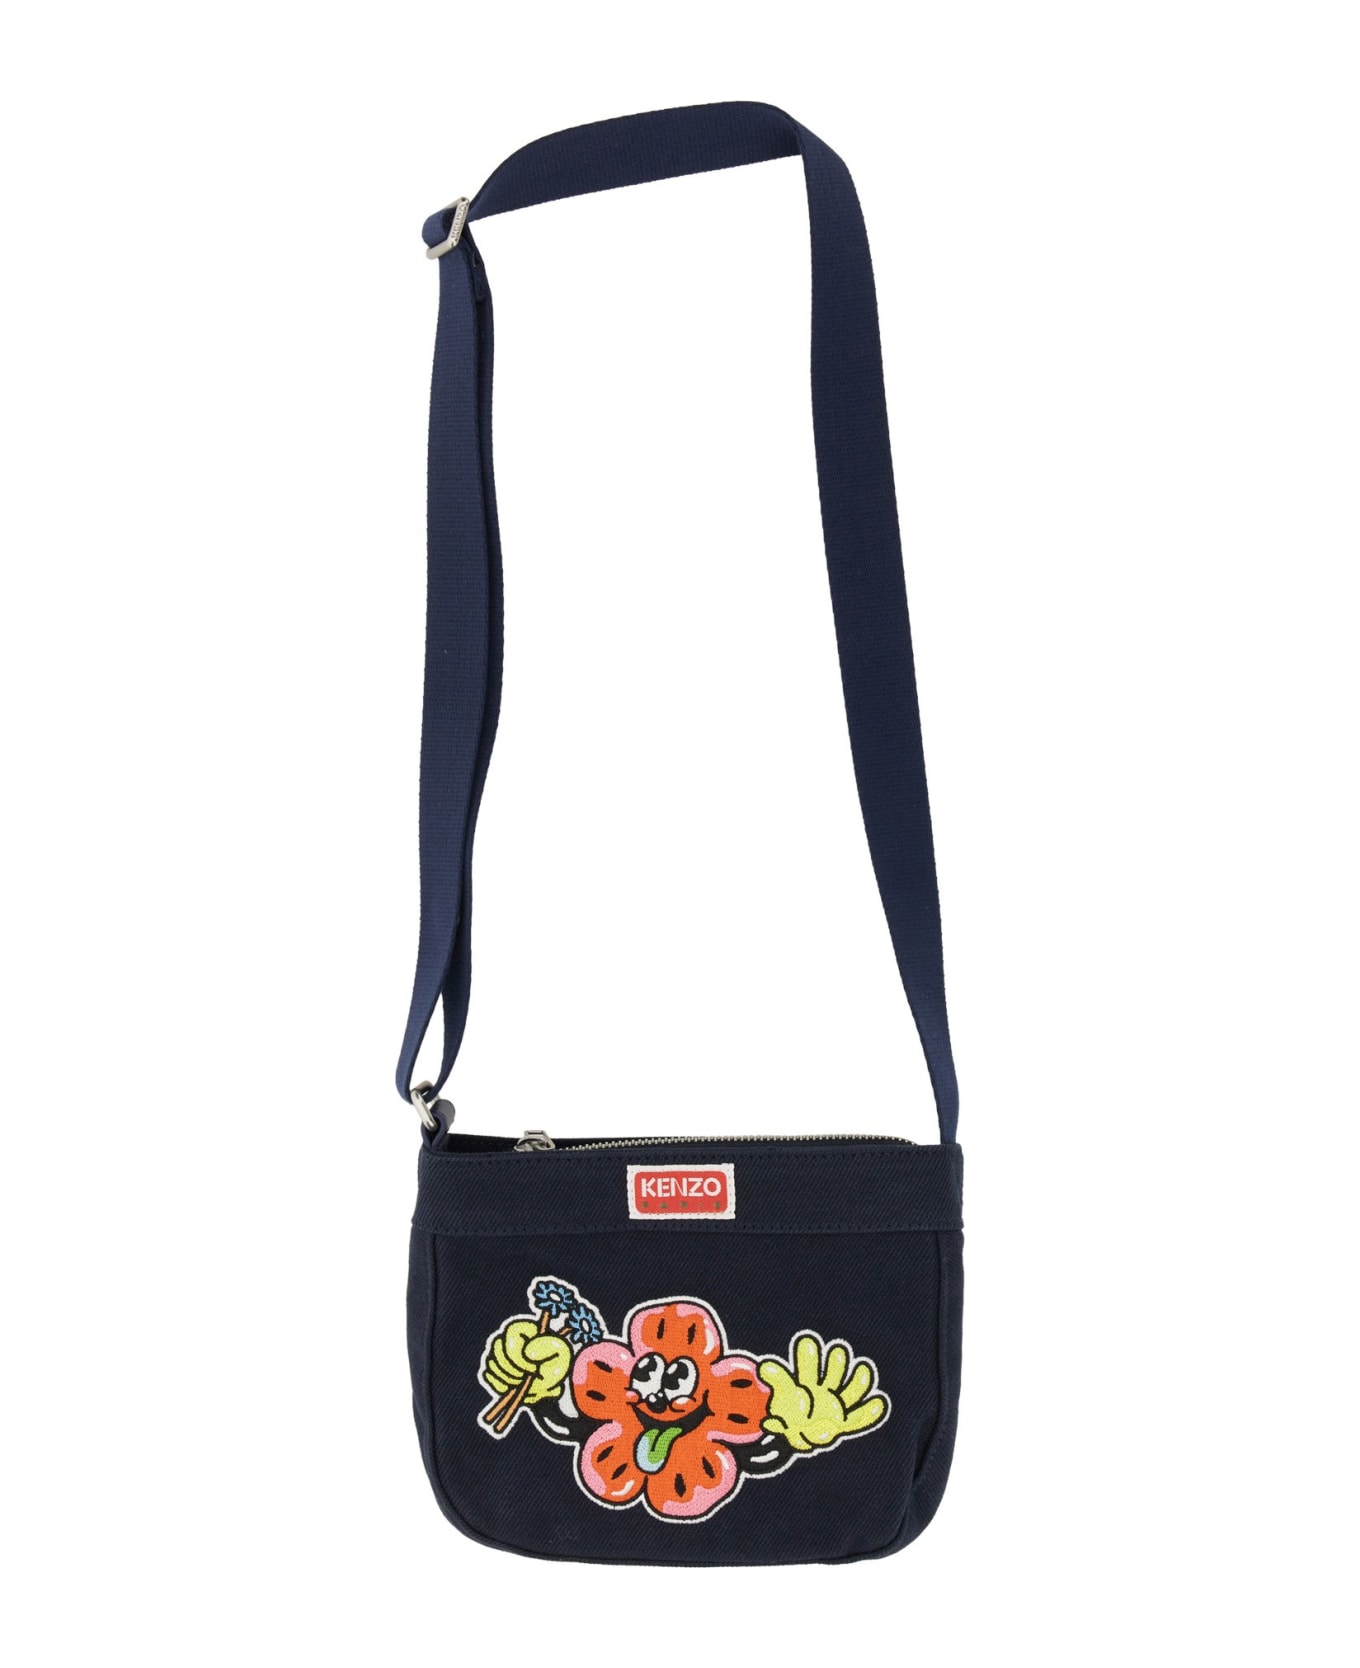 Kenzo Boke Bag With Print - BLU